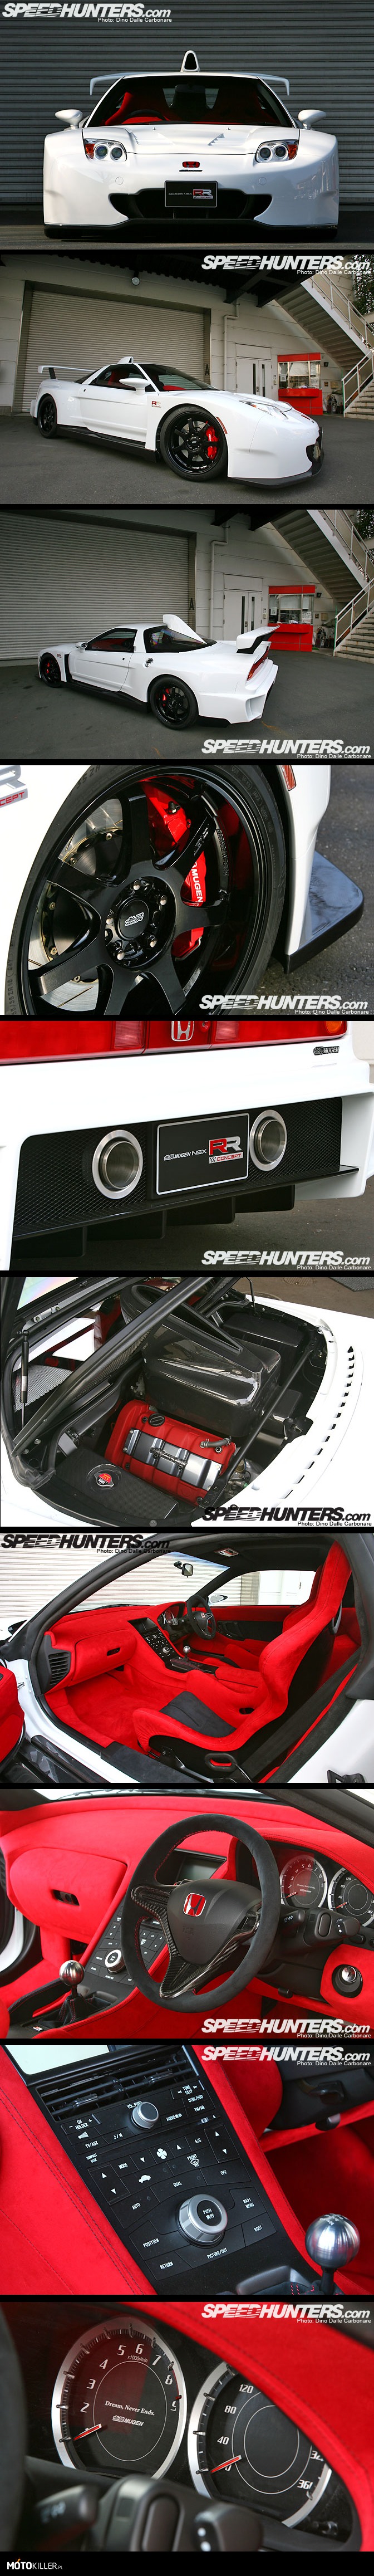 2009 Mugen NSX-RR – Ostatnie wcielenie genialnej Hondy NSX. Można powiedzieć, że jest to pożegnanie NSX&apos;a, ponieważ mimo że produkcja cywilnych modeli zakończyła się w 2005, to właśnie rok 2009 był ostatnim sezonem startów superauta Hondy w wyścigach japońskiej serii Super GT. Z zewnątrz bodykit stylizowany właśnie na wyścigową odmianę, zaś środek to mistrzostwo, klasa sama w sobie. Moim zdaniem tak mogłoby wyglądać wnętrze współczesnego NSX, prosto, a jednocześnie bardzo nowocześnie. Na tarczy obrotomierza znajduje się wymowny napis &quot;Dream, never ends&quot;. Coś pięknego. 